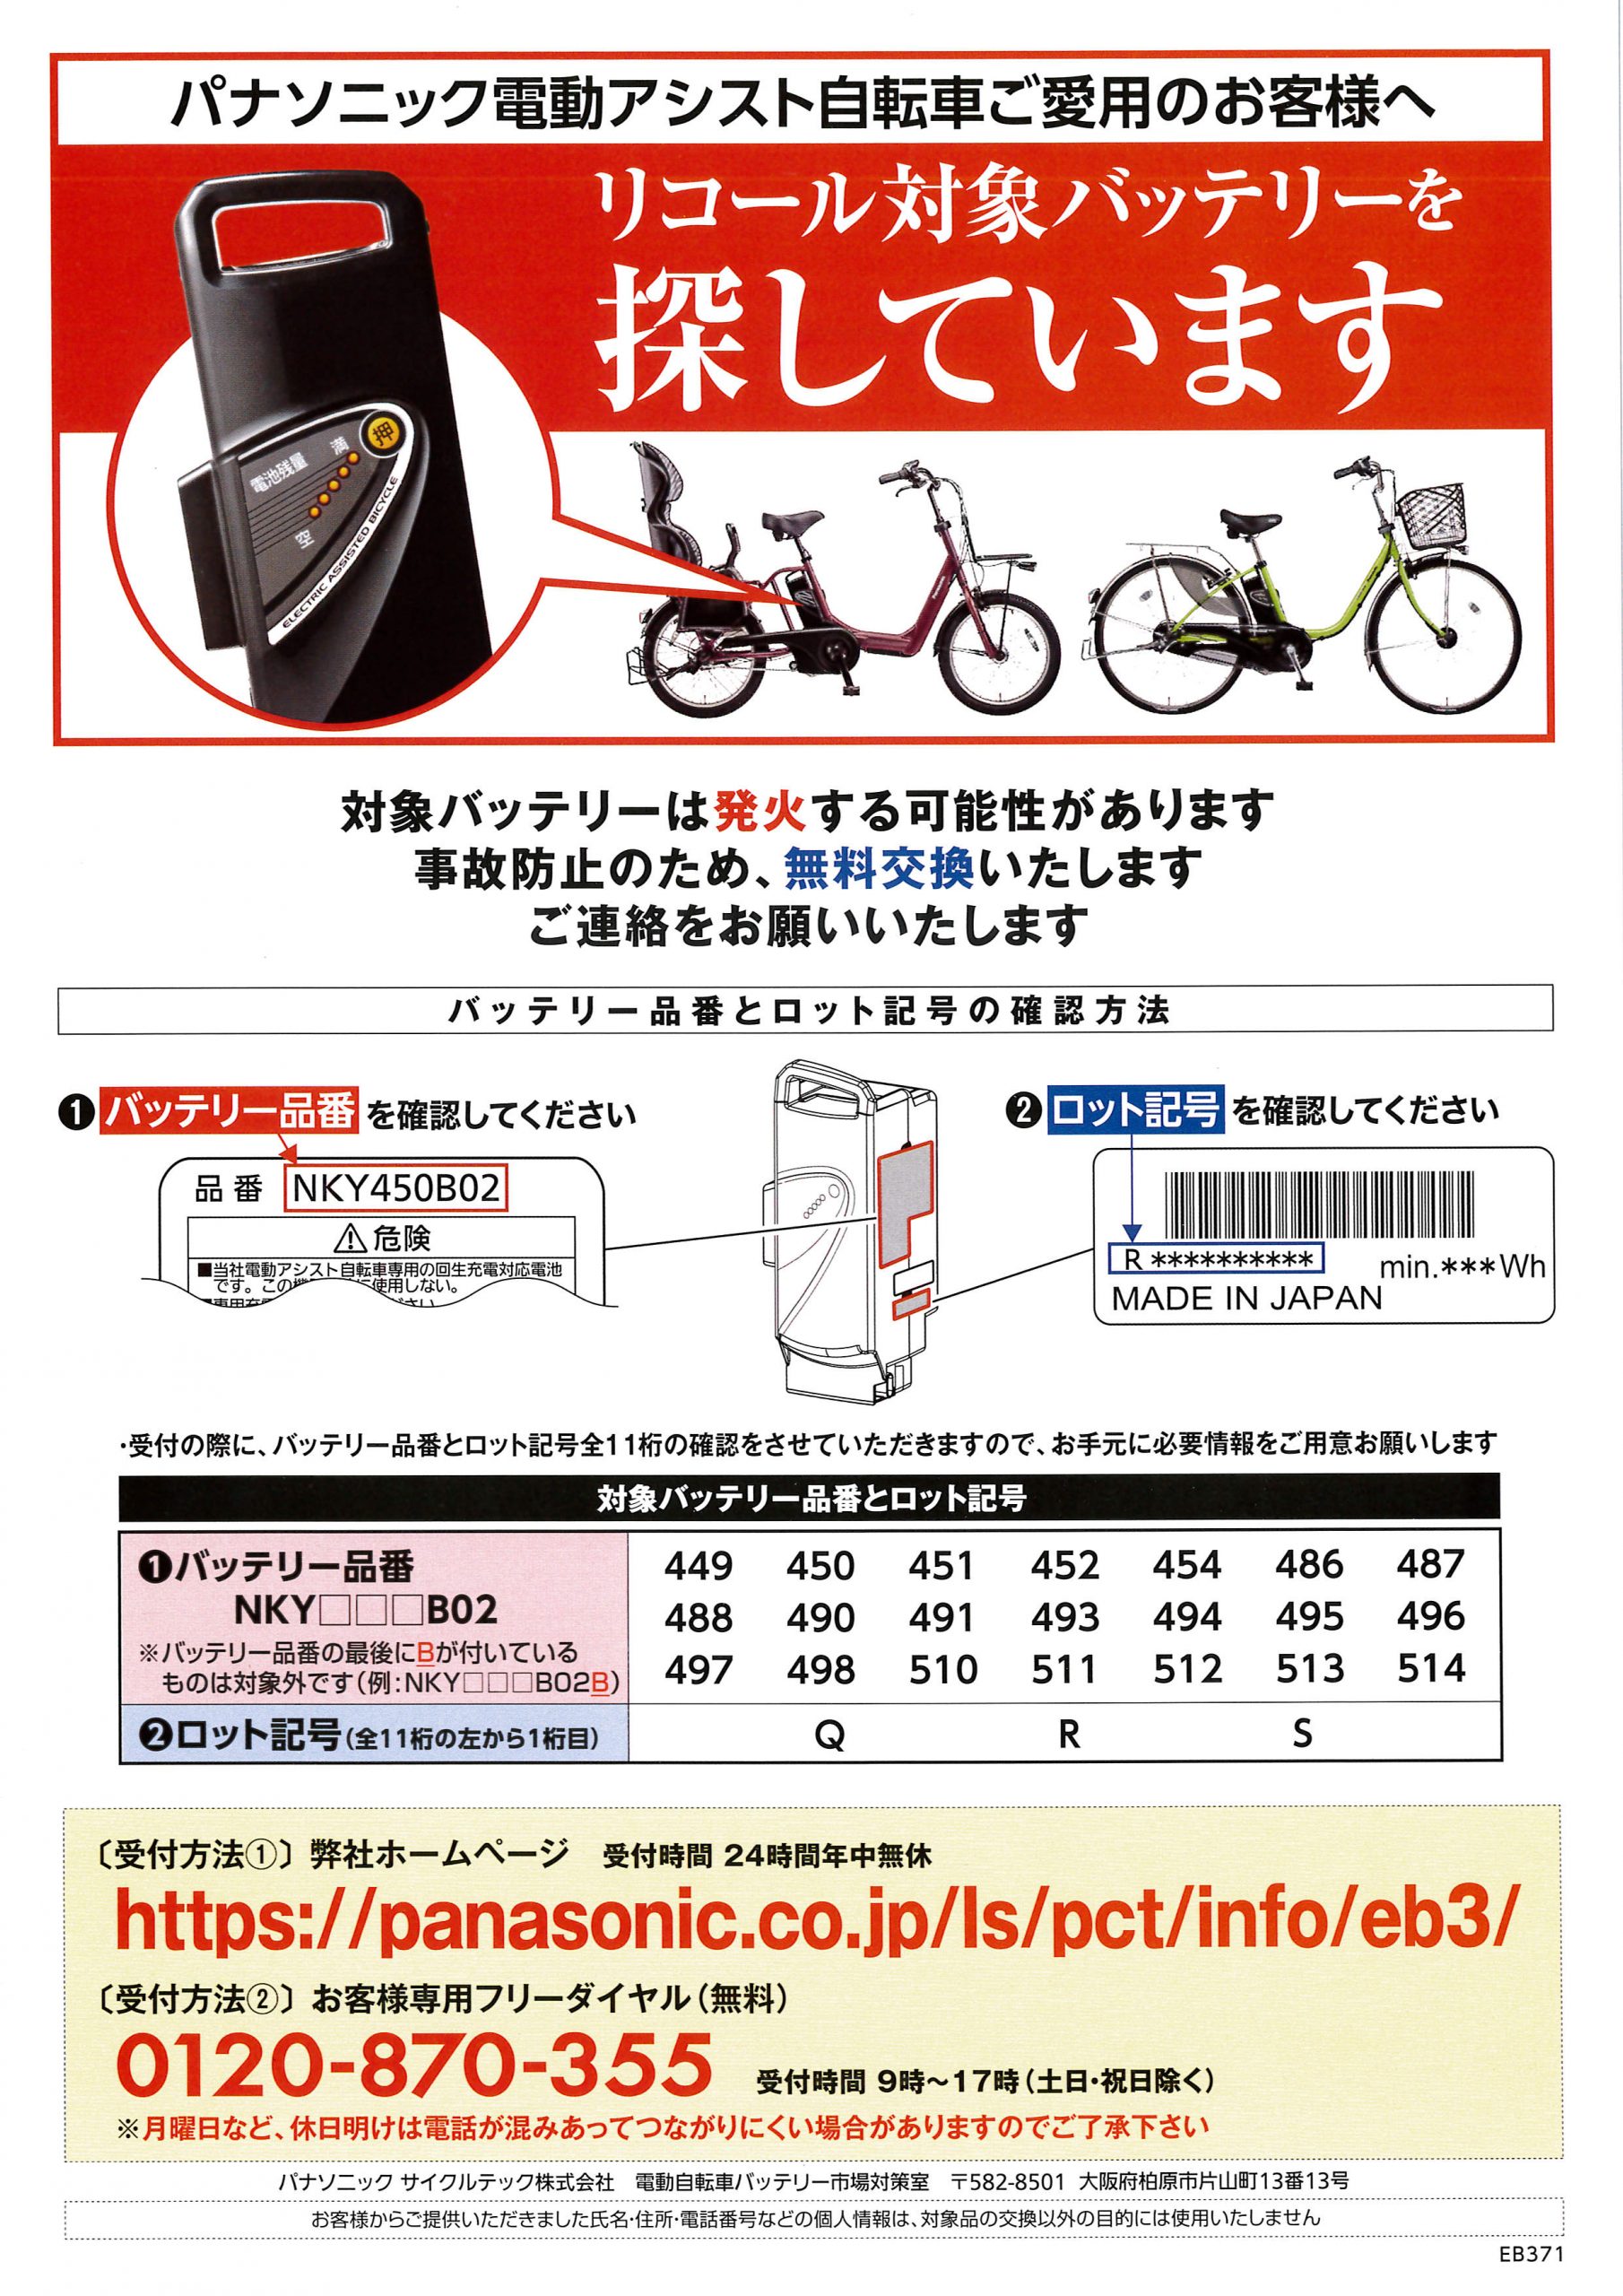 パナソニック 電動自転車バッテリー - www.bjmpmpc.com